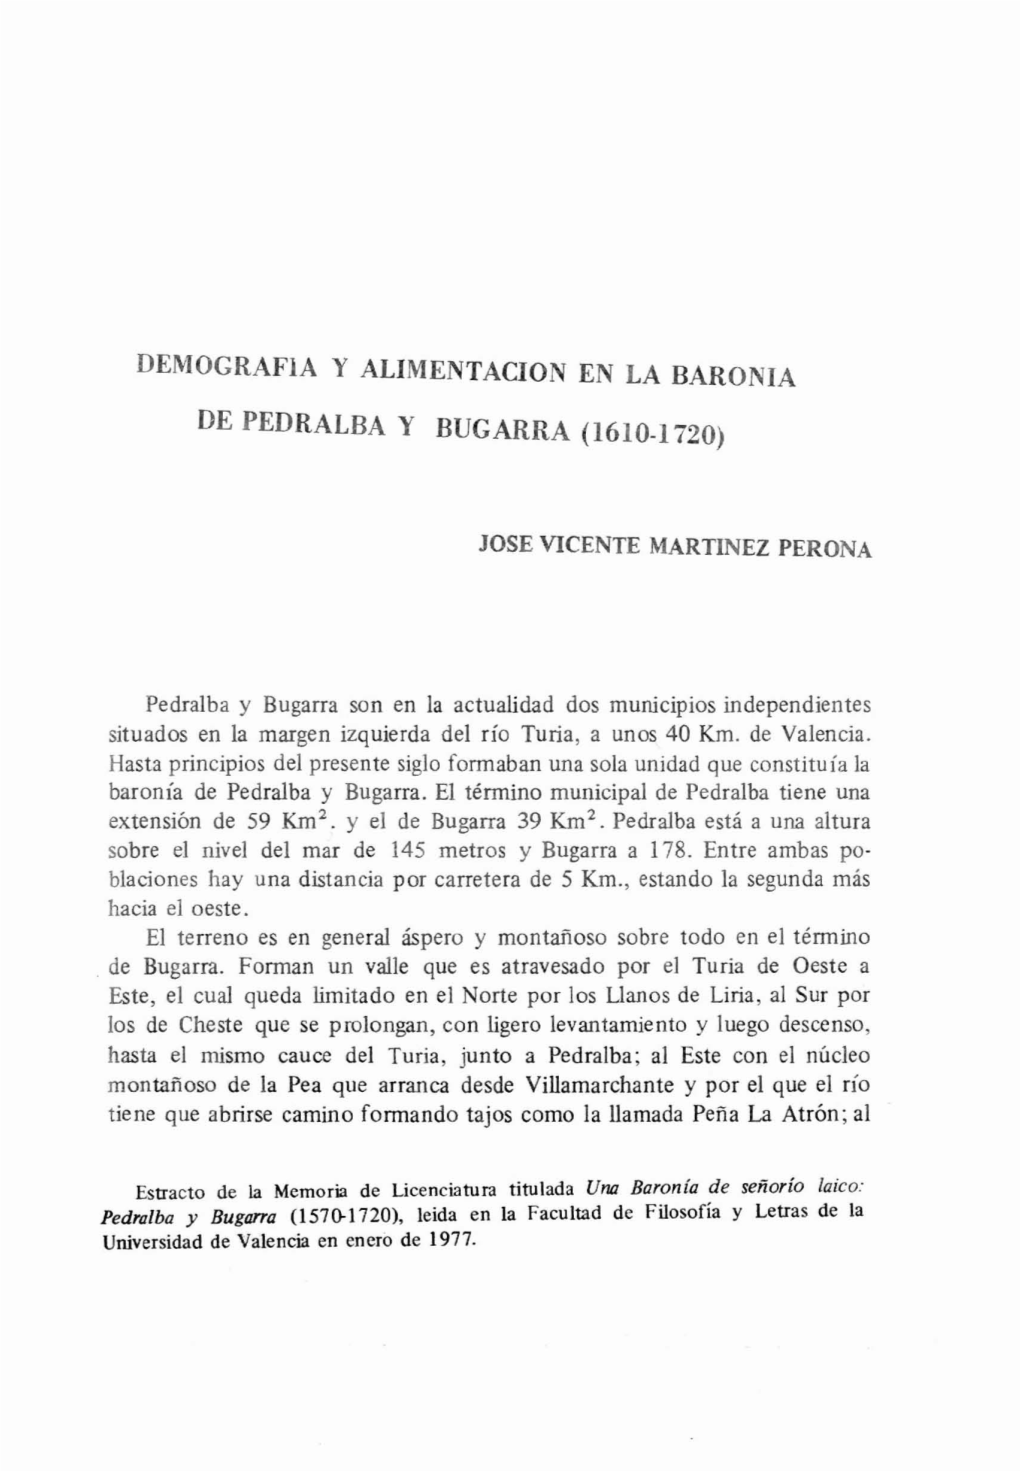 Demografla Y ALIMENTACION EN LA BARONIA DE PEDRALBA Y BUGARRA (1610-1720)